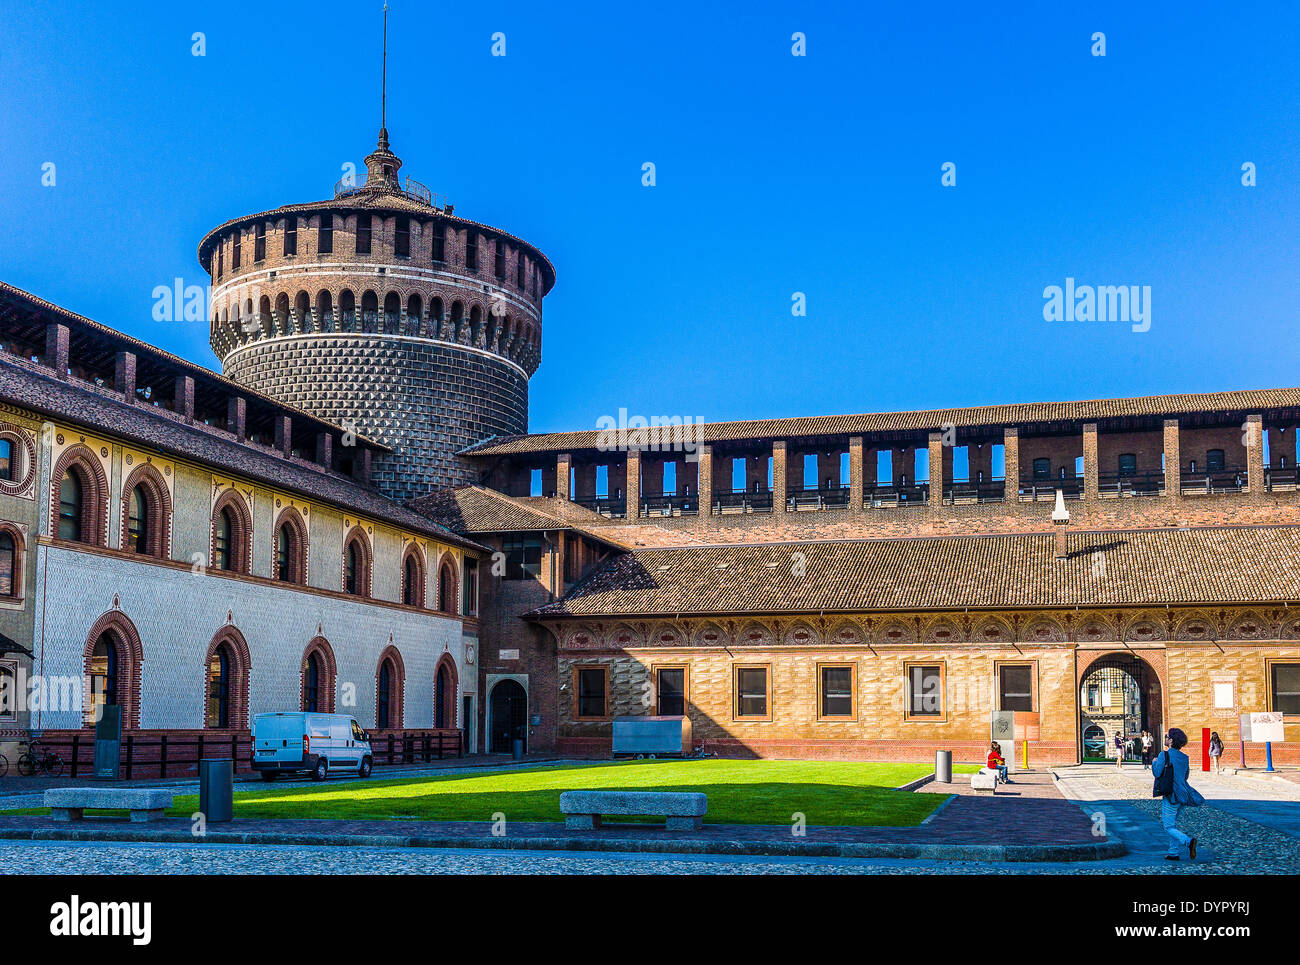 Milano, Italia. 23 apr 2014. Il Castello Sforzesco cortile del credito: Davvero Facile Star/Alamy Live News Foto Stock